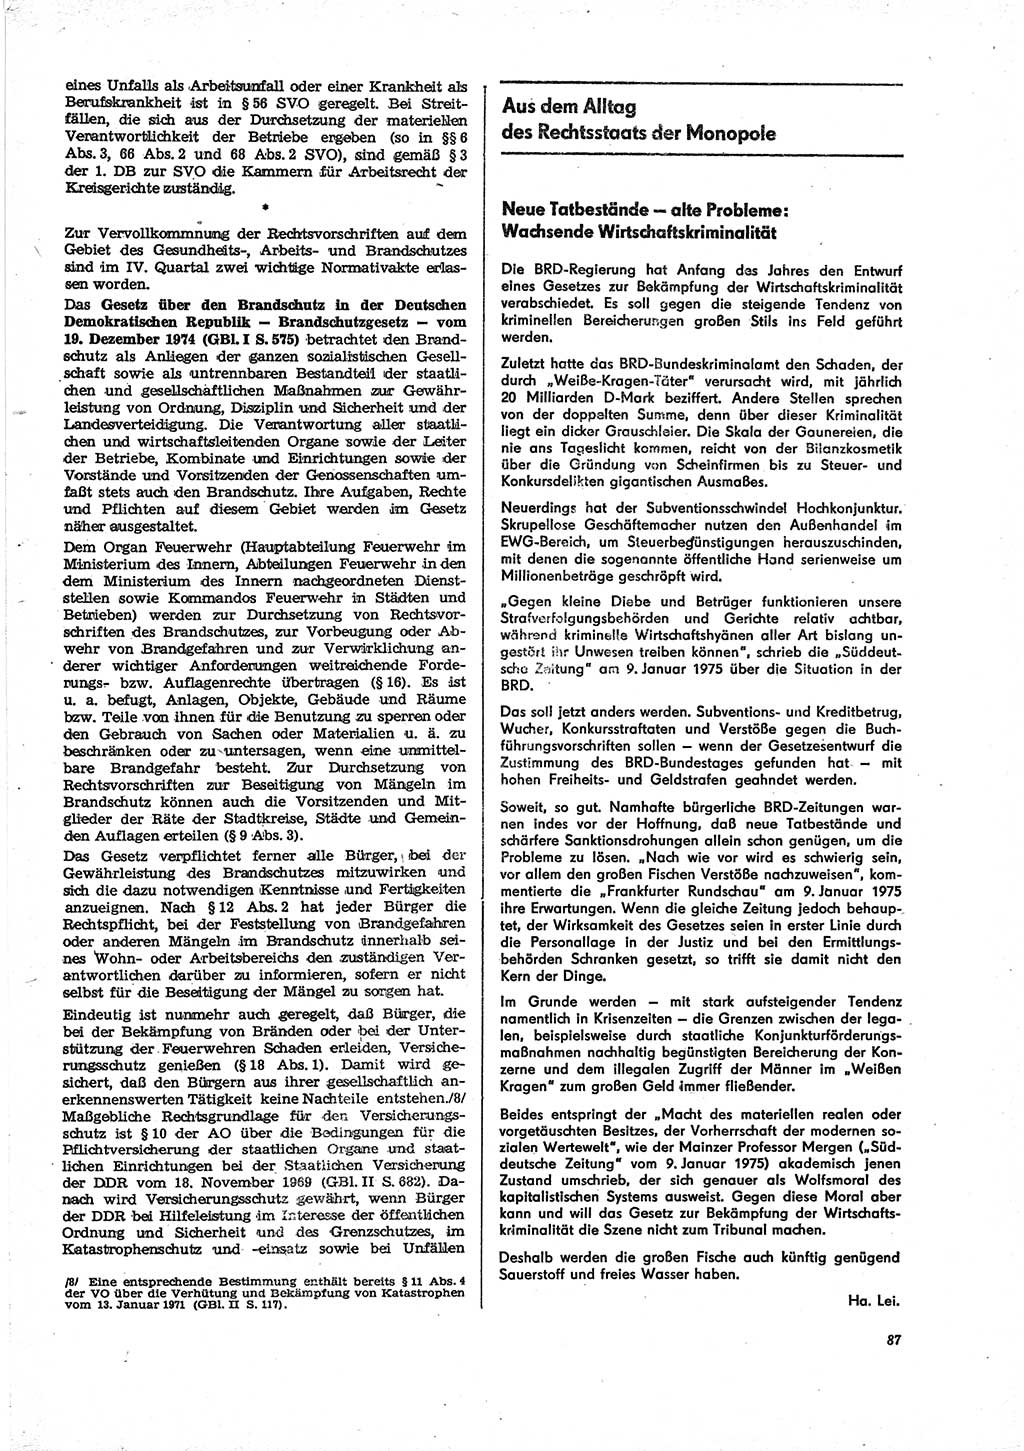 Neue Justiz (NJ), Zeitschrift für Recht und Rechtswissenschaft [Deutsche Demokratische Republik (DDR)], 29. Jahrgang 1975, Seite 87 (NJ DDR 1975, S. 87)